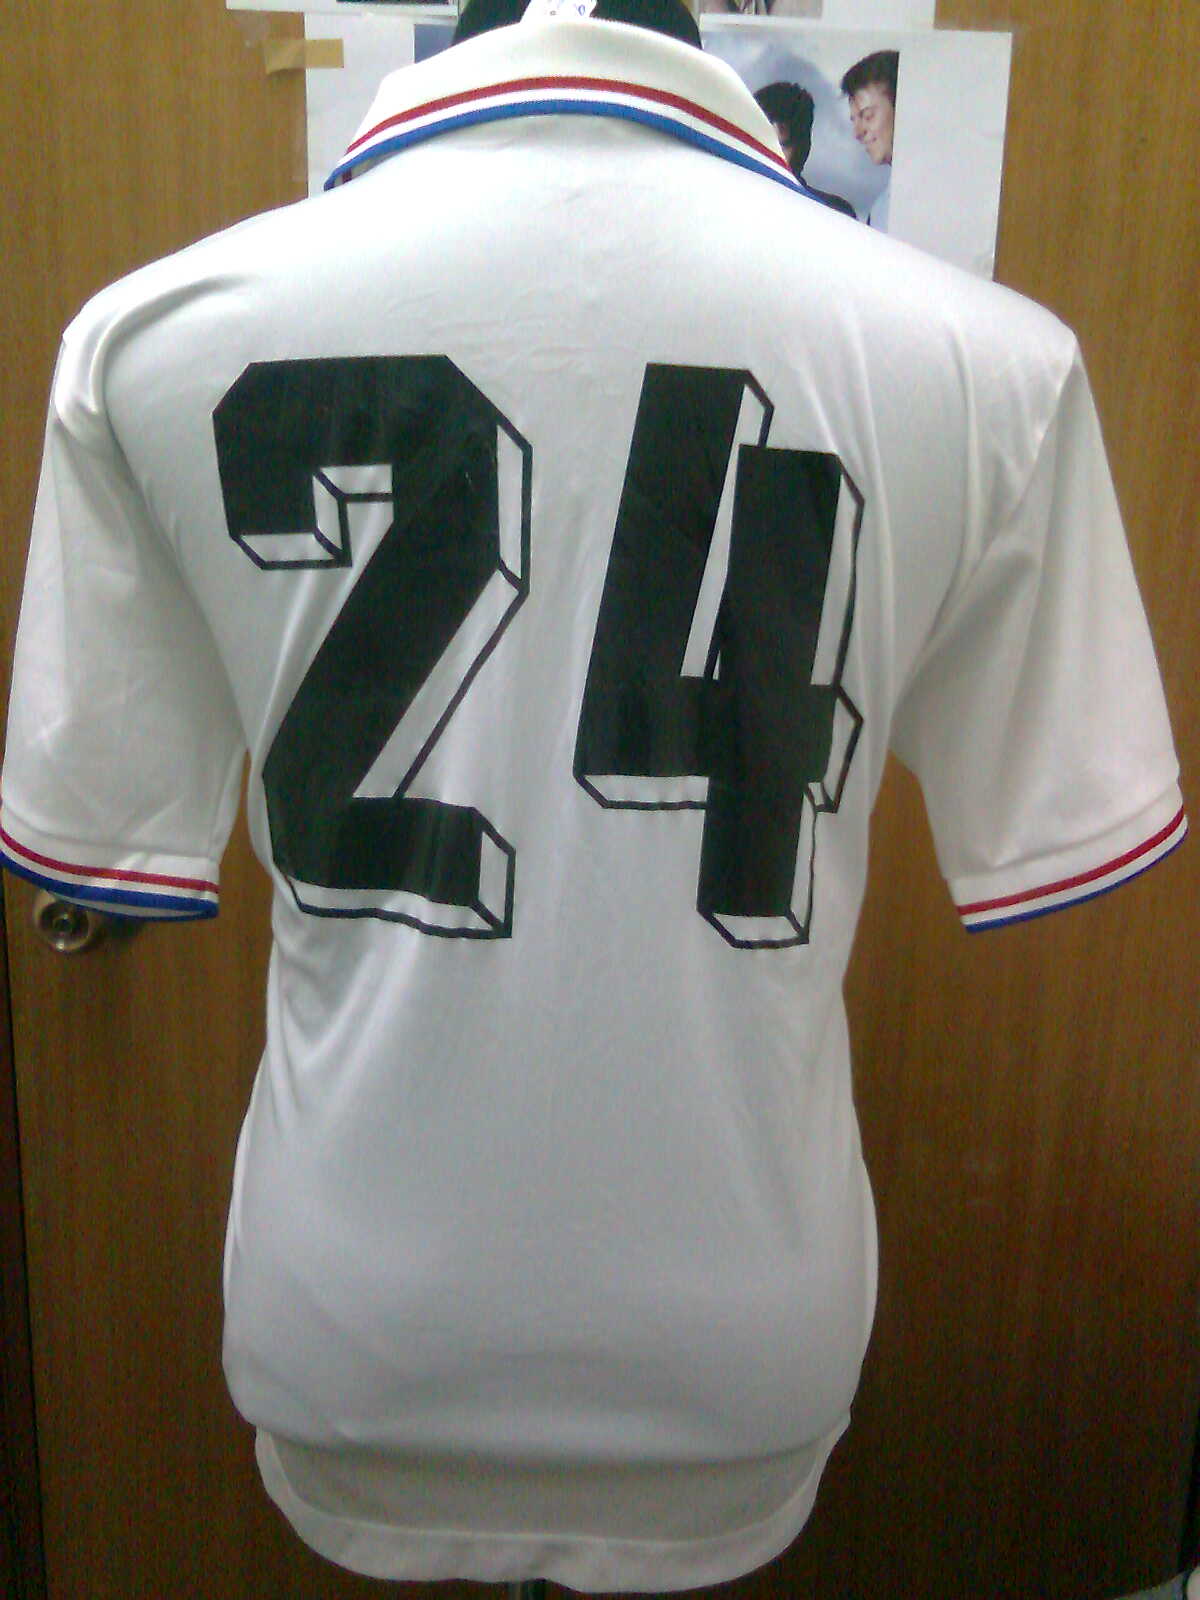 Hình nền Nagoya Grampus jersey (40) - hình nền bóng đá - hình nền cầu thủ - hình nền đội bóng